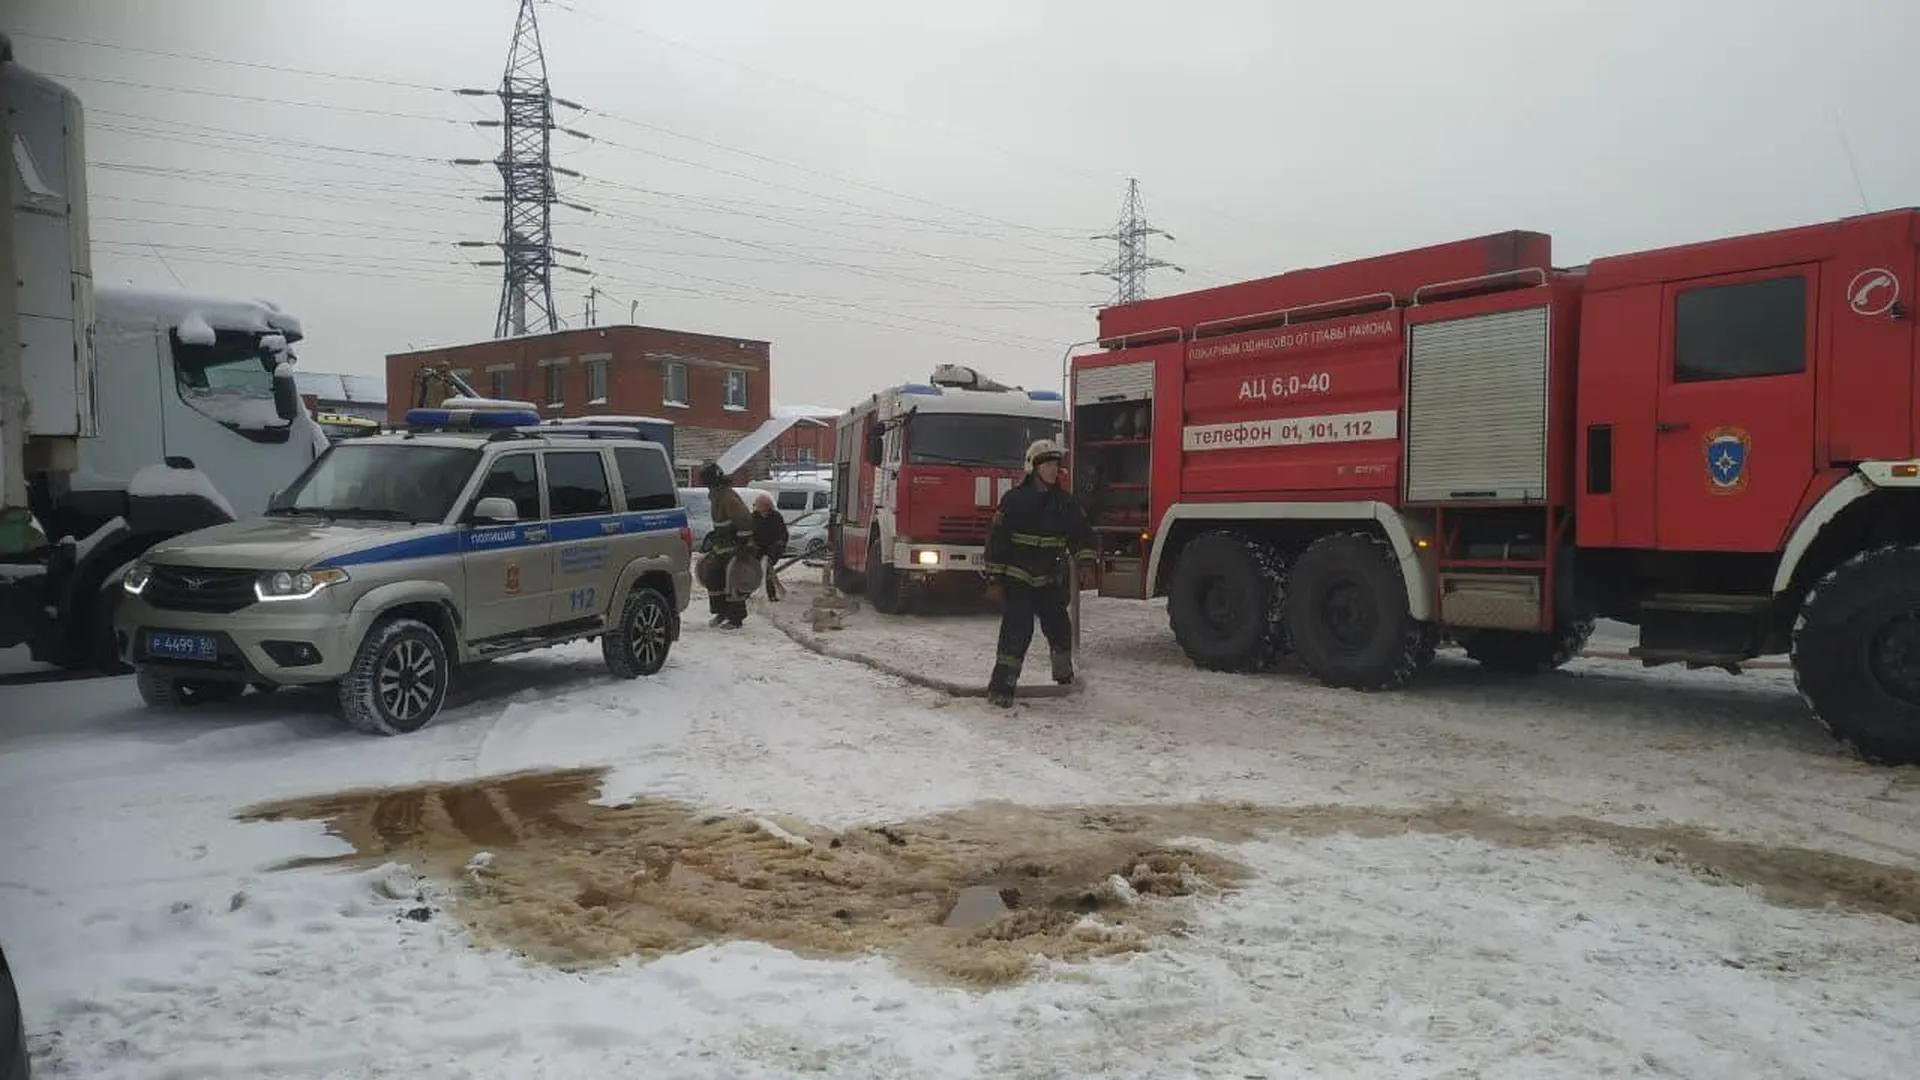 Видео с места крупного пожара в Одинцове появилось в Сети